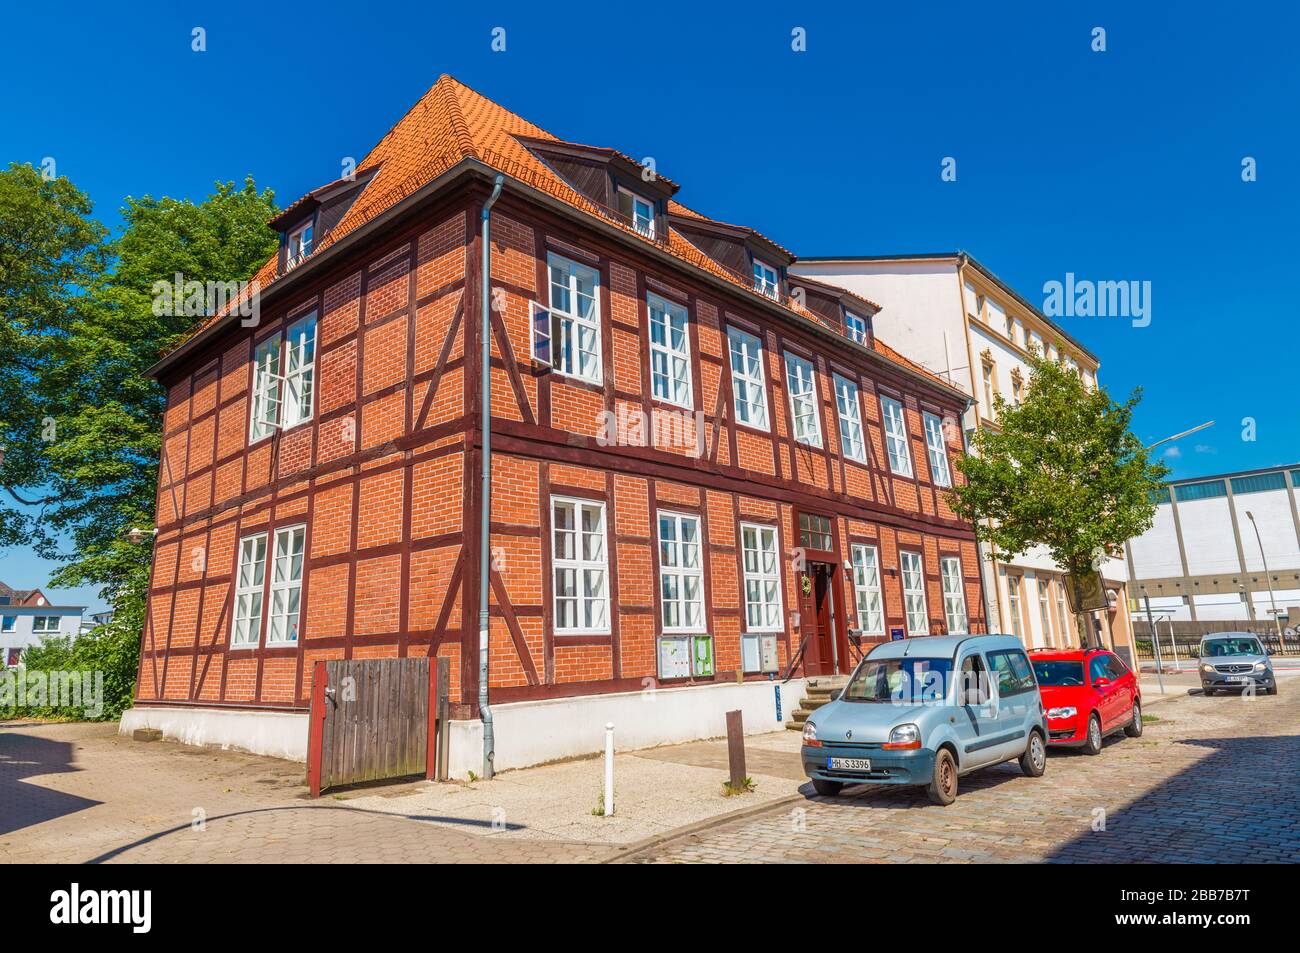 Harburg - juillet 2018, Allemagne: Une maison dans le style traditionnel de l'architecture allemande. Bâtiment en brique rouge avec tuiles en argile sur le toit Banque D'Images